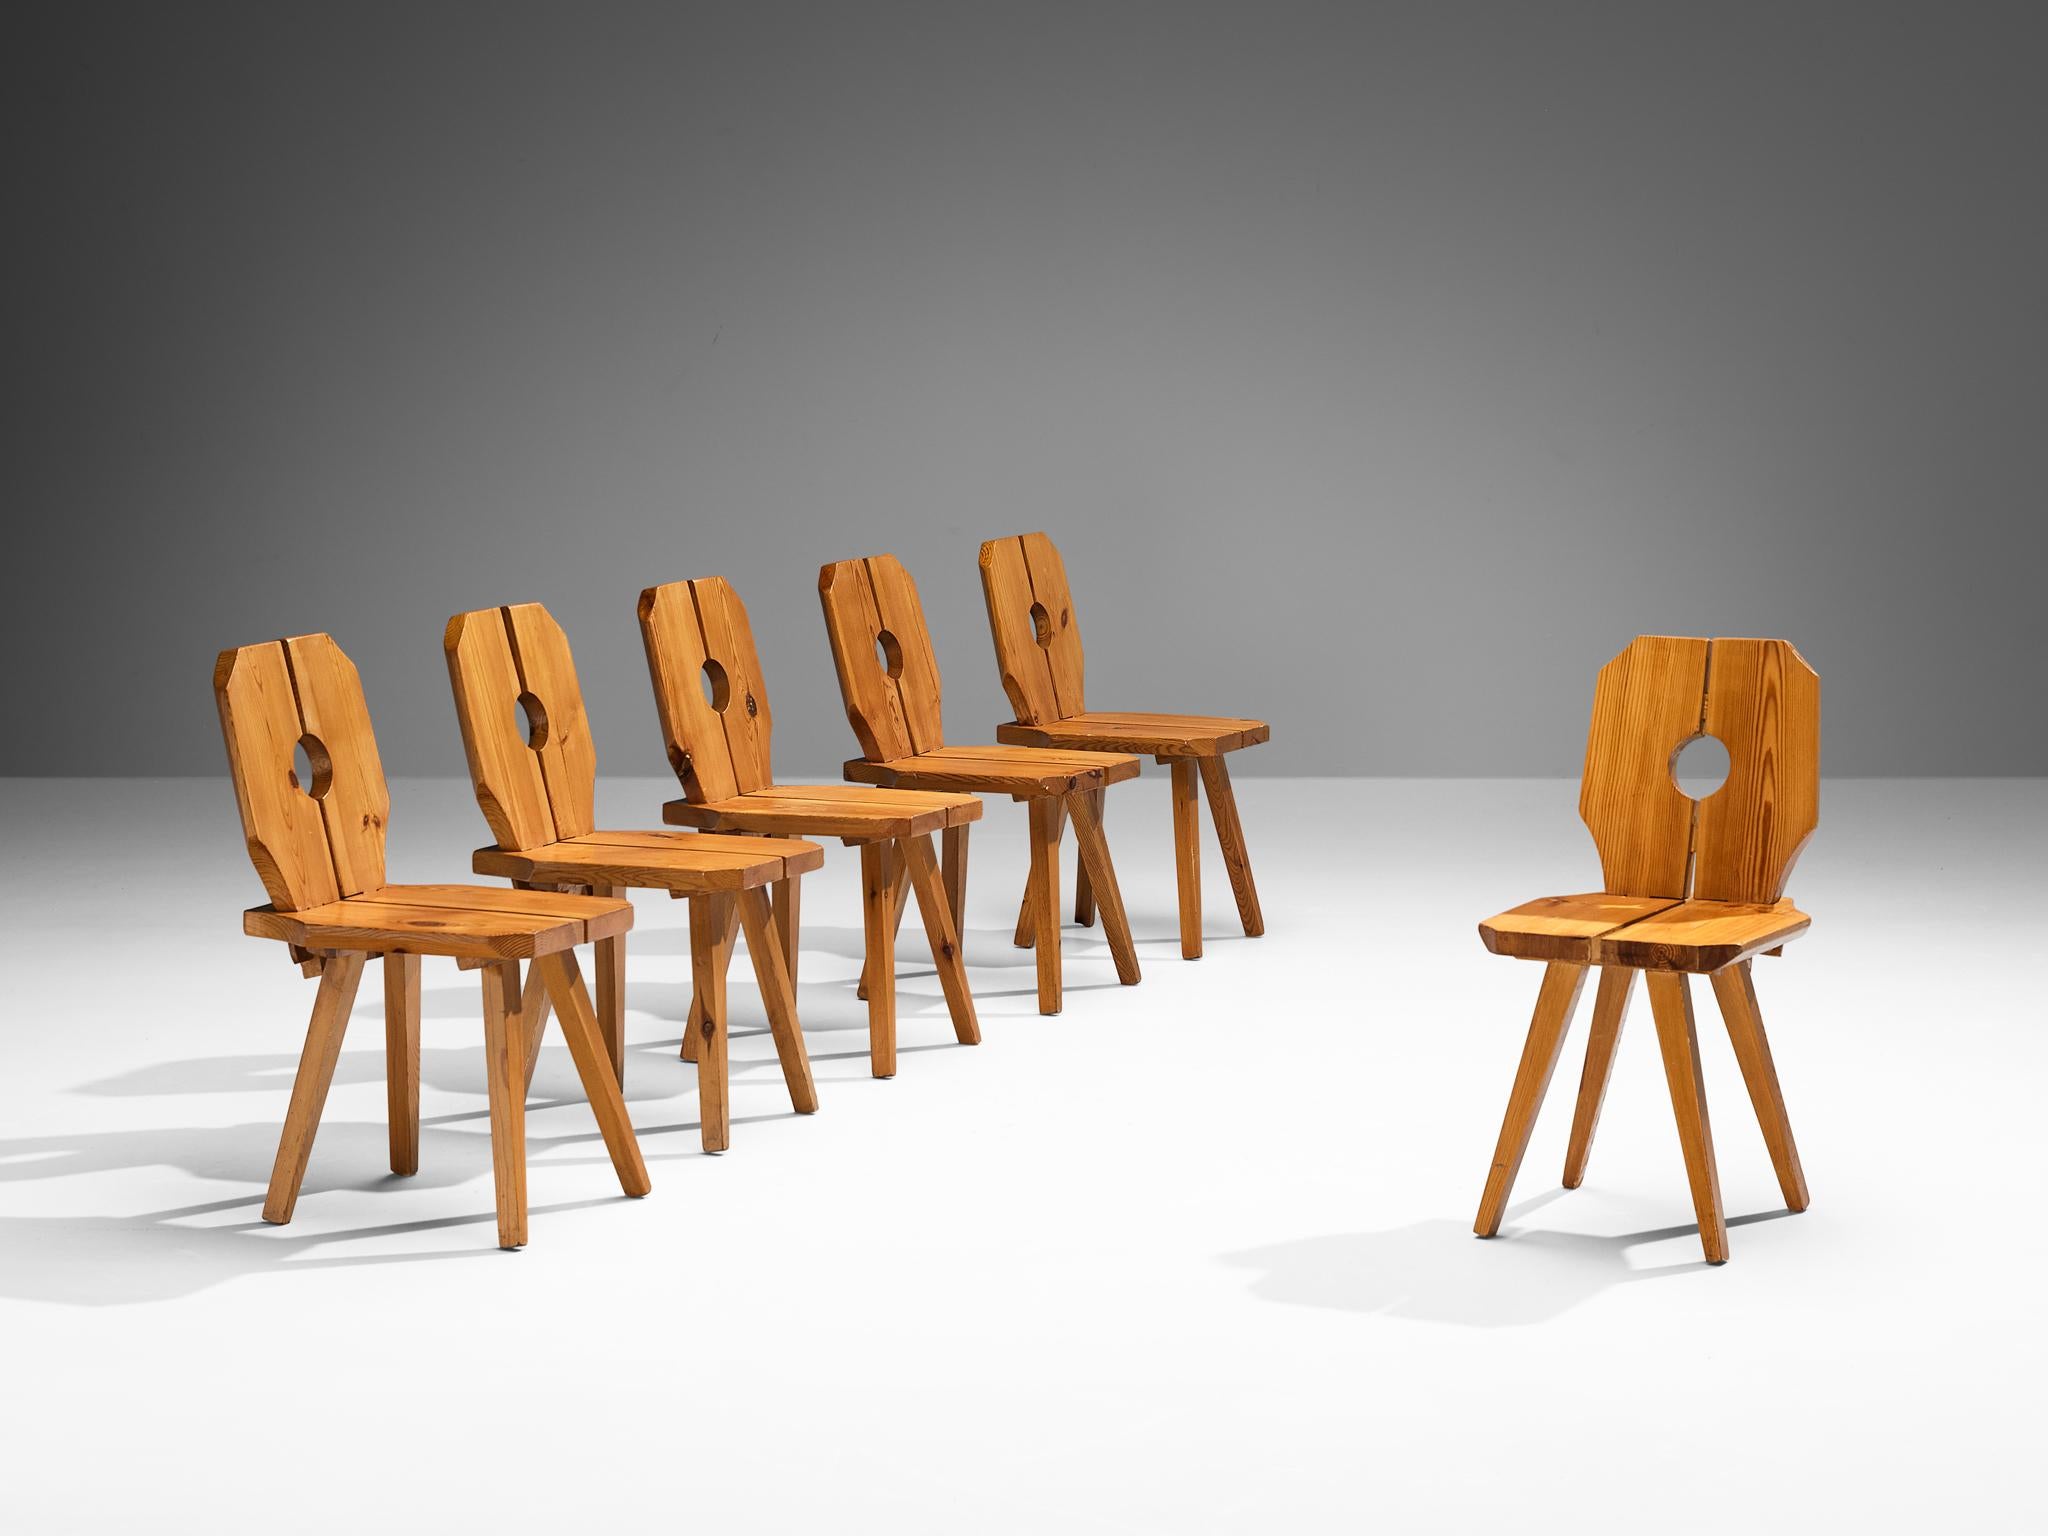 Satz von sechs Esszimmerstühlen, Kiefer massiv, Europa, 1960er Jahre

Geformte Esszimmerstühle aus ausdrucksvoll gemasertem Kiefernholz. Mehrere Merkmale kennzeichnen das skulpturale Aussehen dieses Sets aus zwölf Stühlen. Erstens, die polygonal